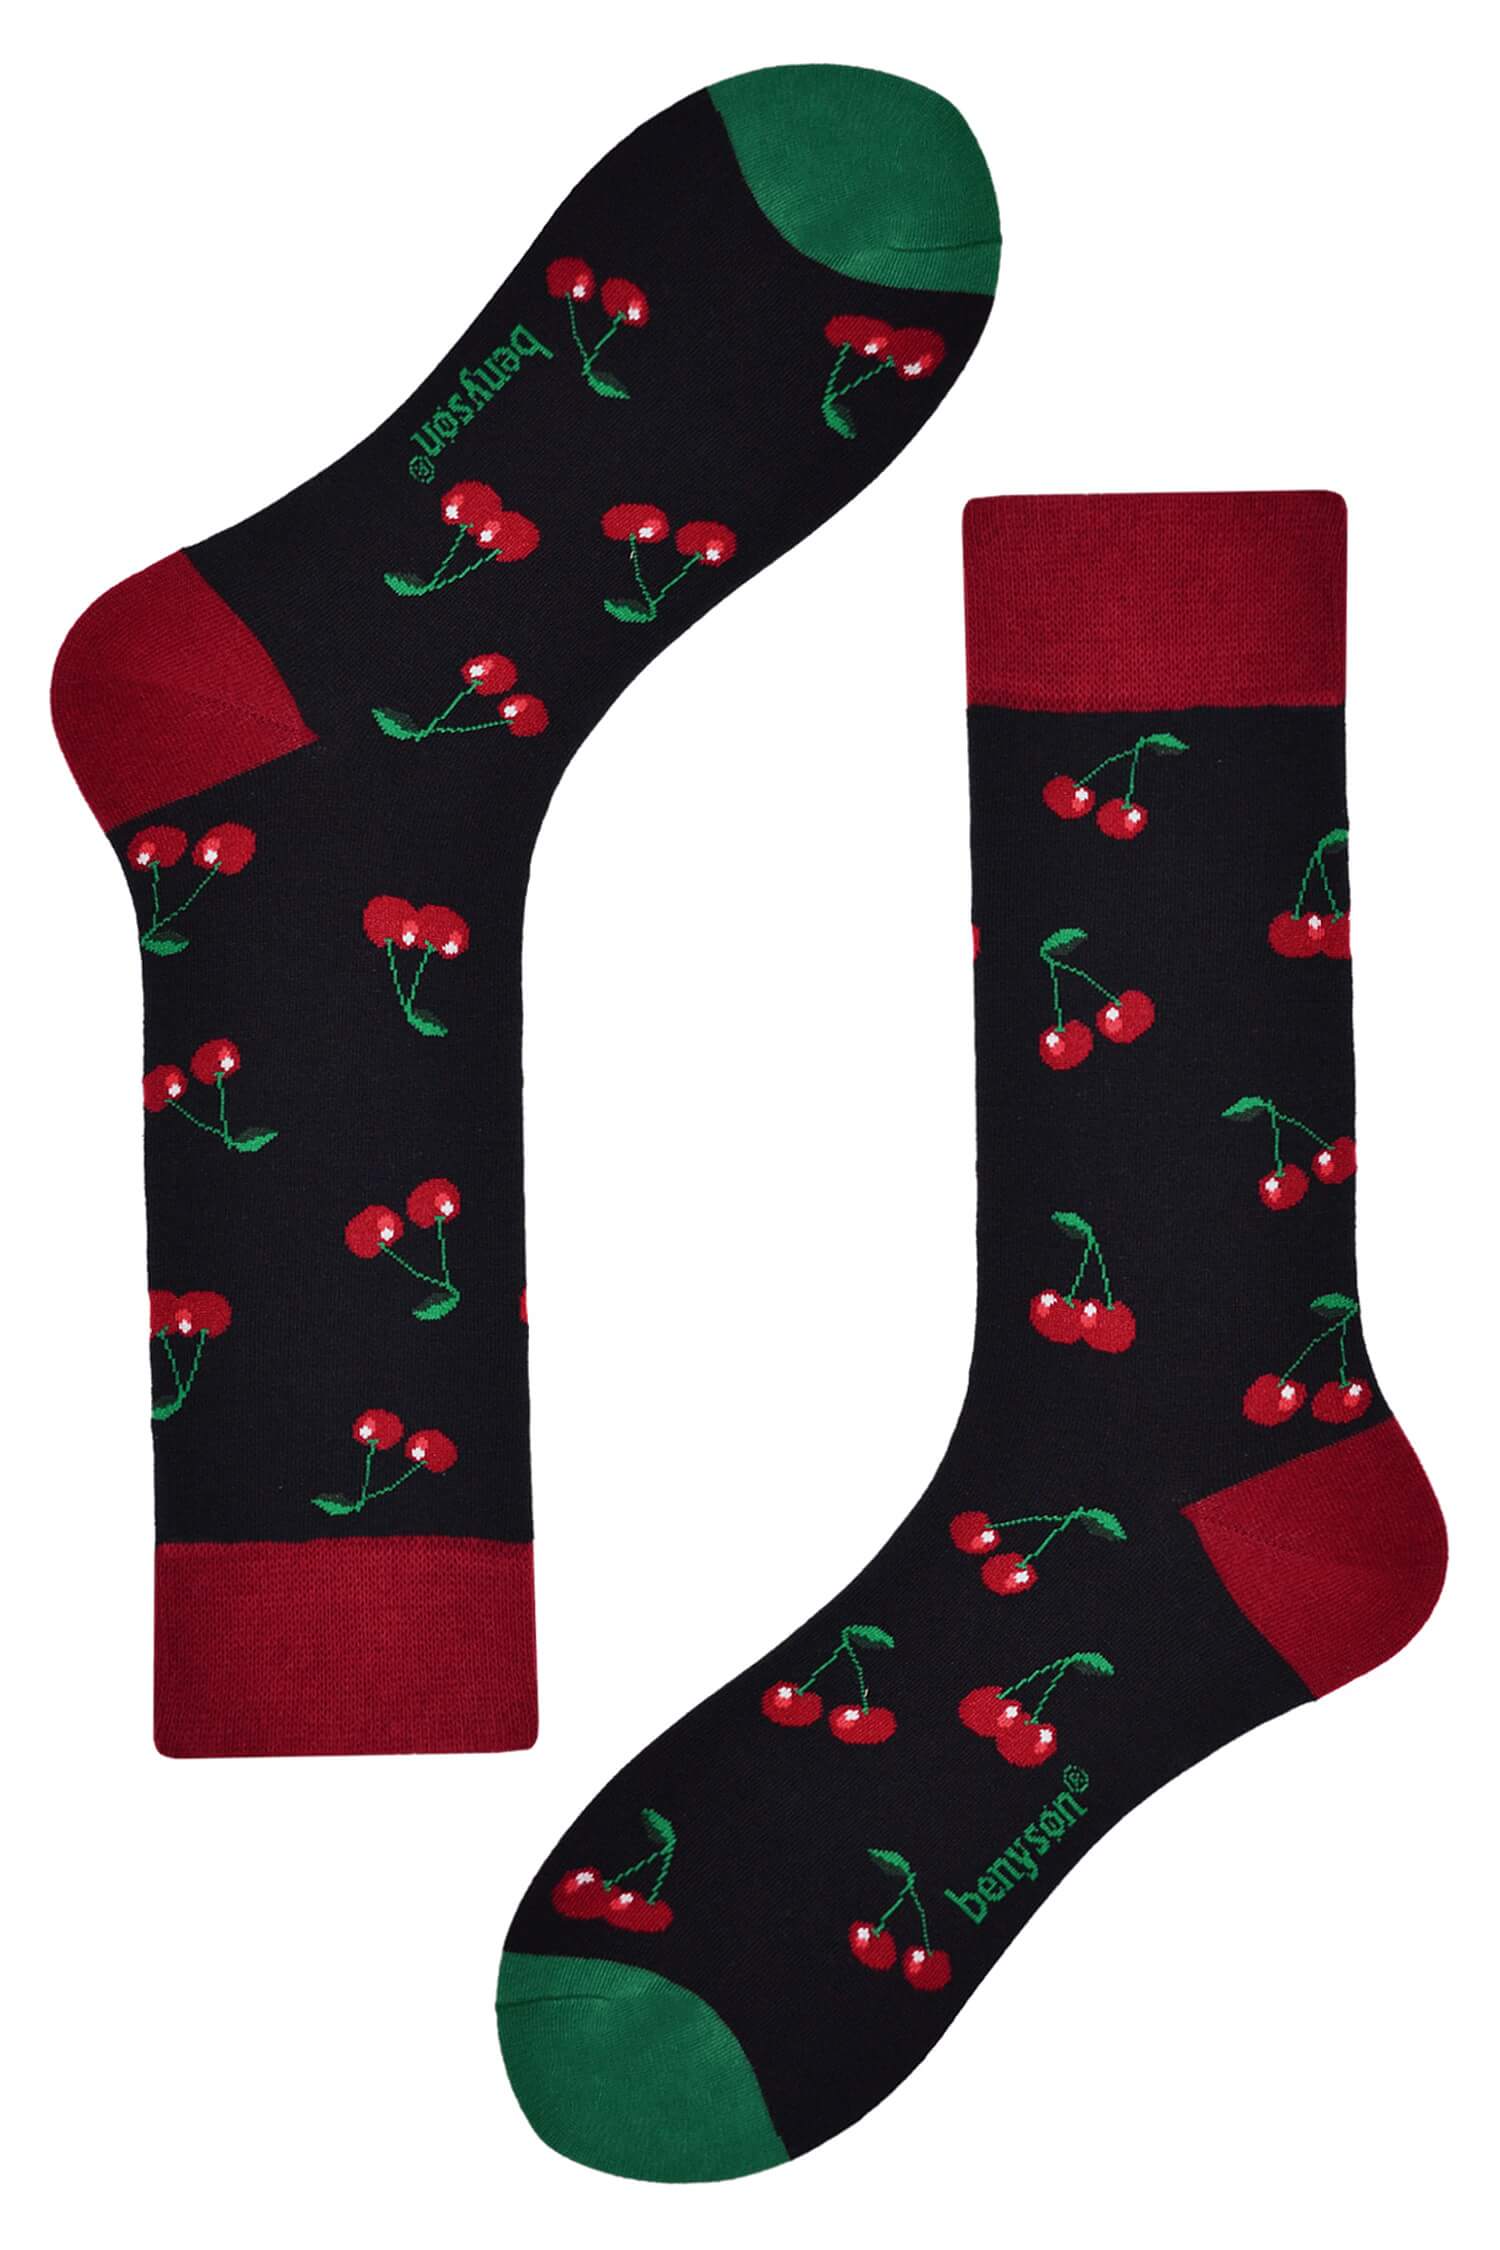 Sweet cherry vysoké ponožky s obrázky 052 42-46 černá